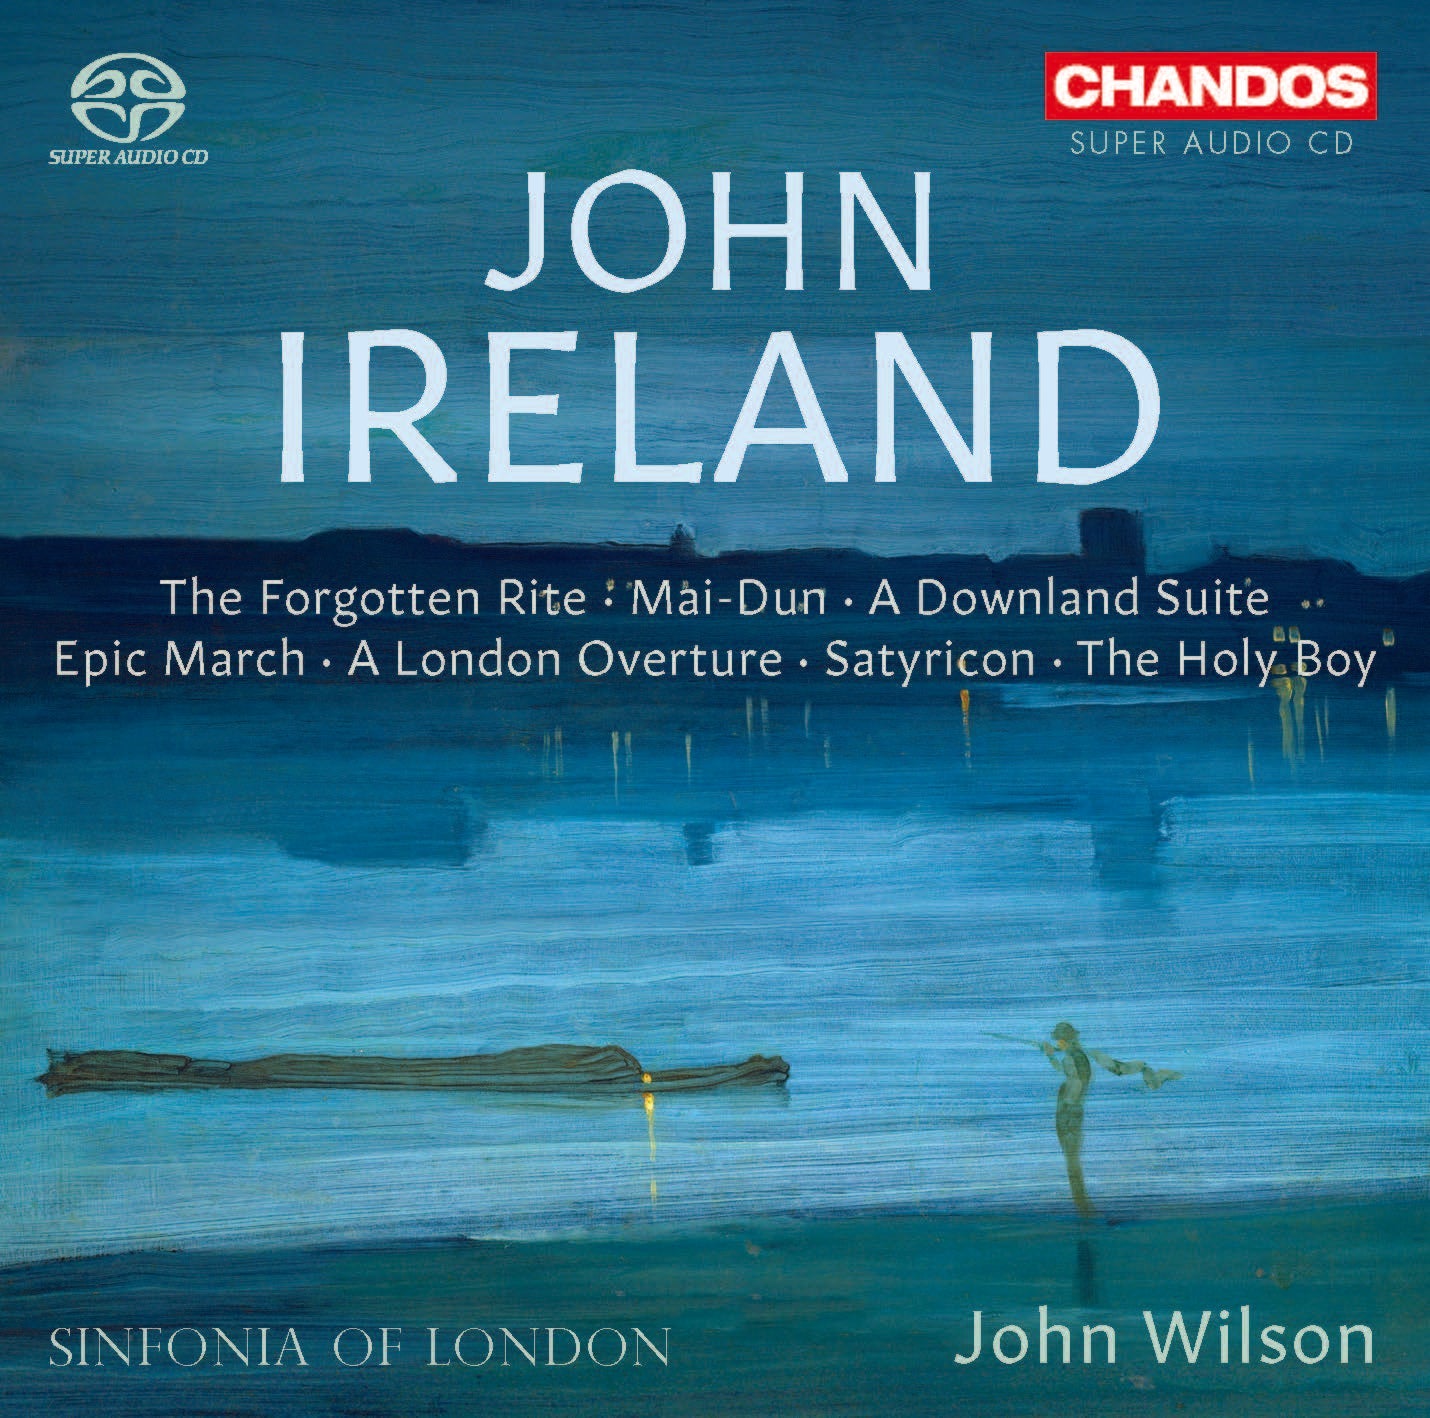 Ireland: Orchestral Works